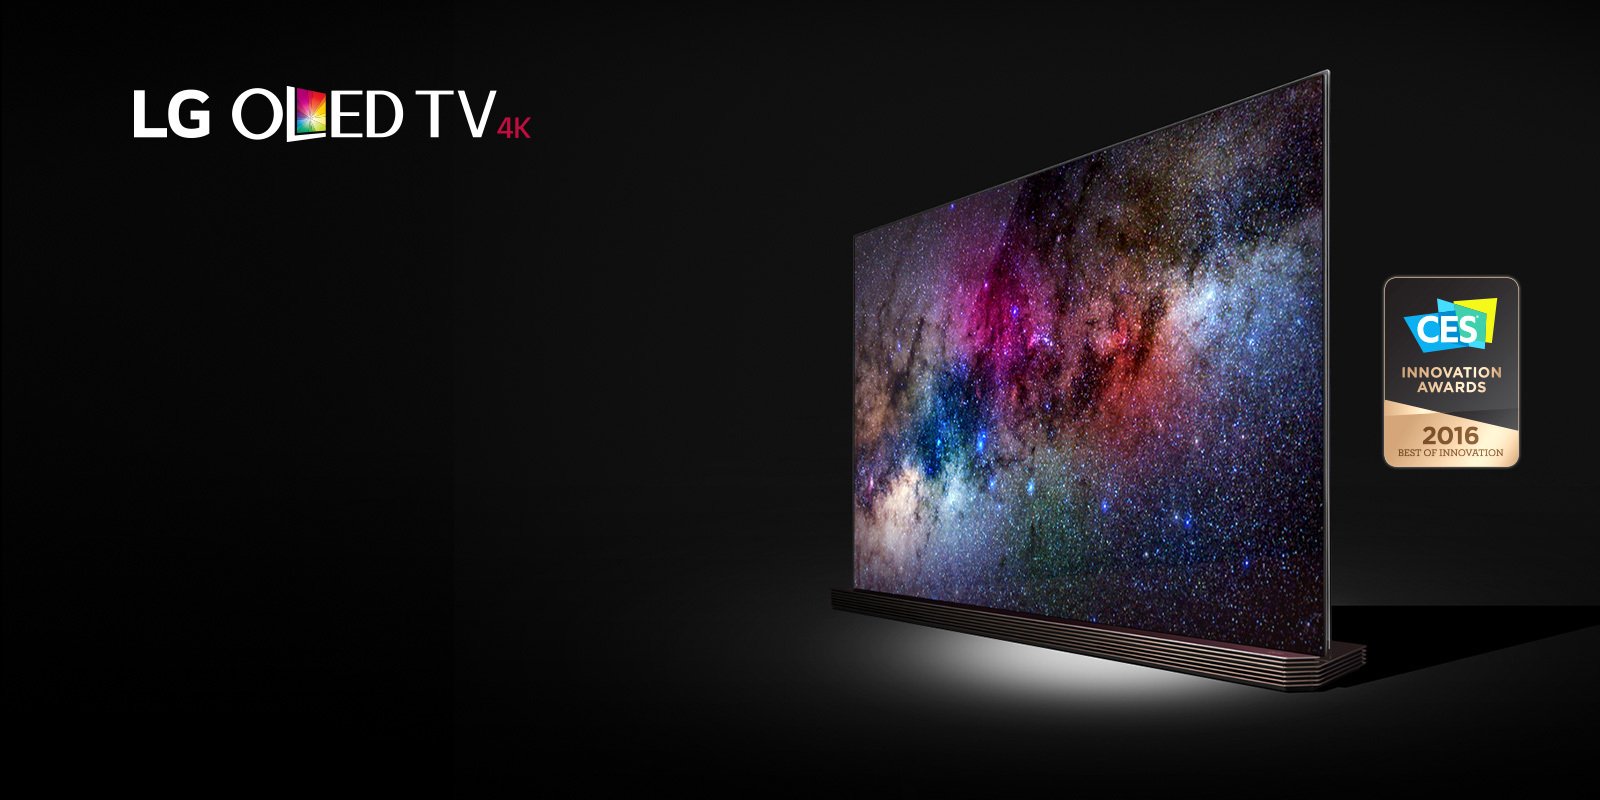 LG 4K TV'ler Hala 2.8K Kalite Sunabiliyor